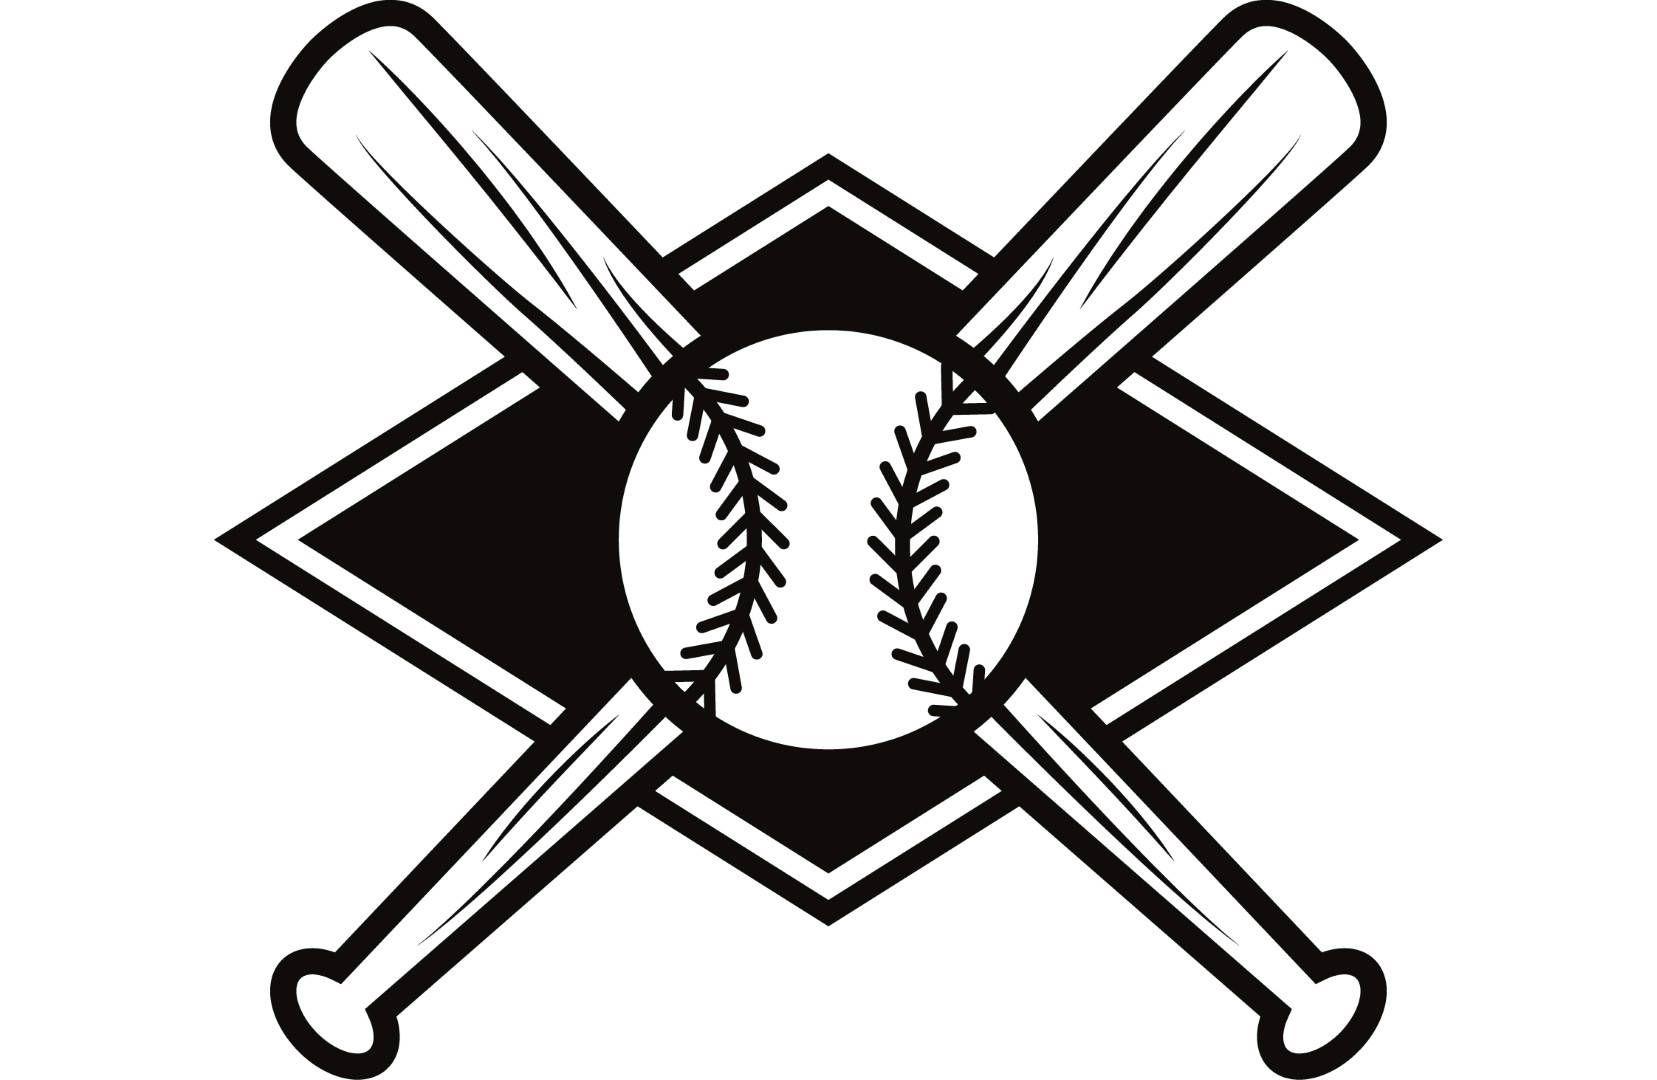 Baseball Crossed Bats Logo - Baseball Logo 7 Bats Crossed Ball Diamond League Equipment | Etsy